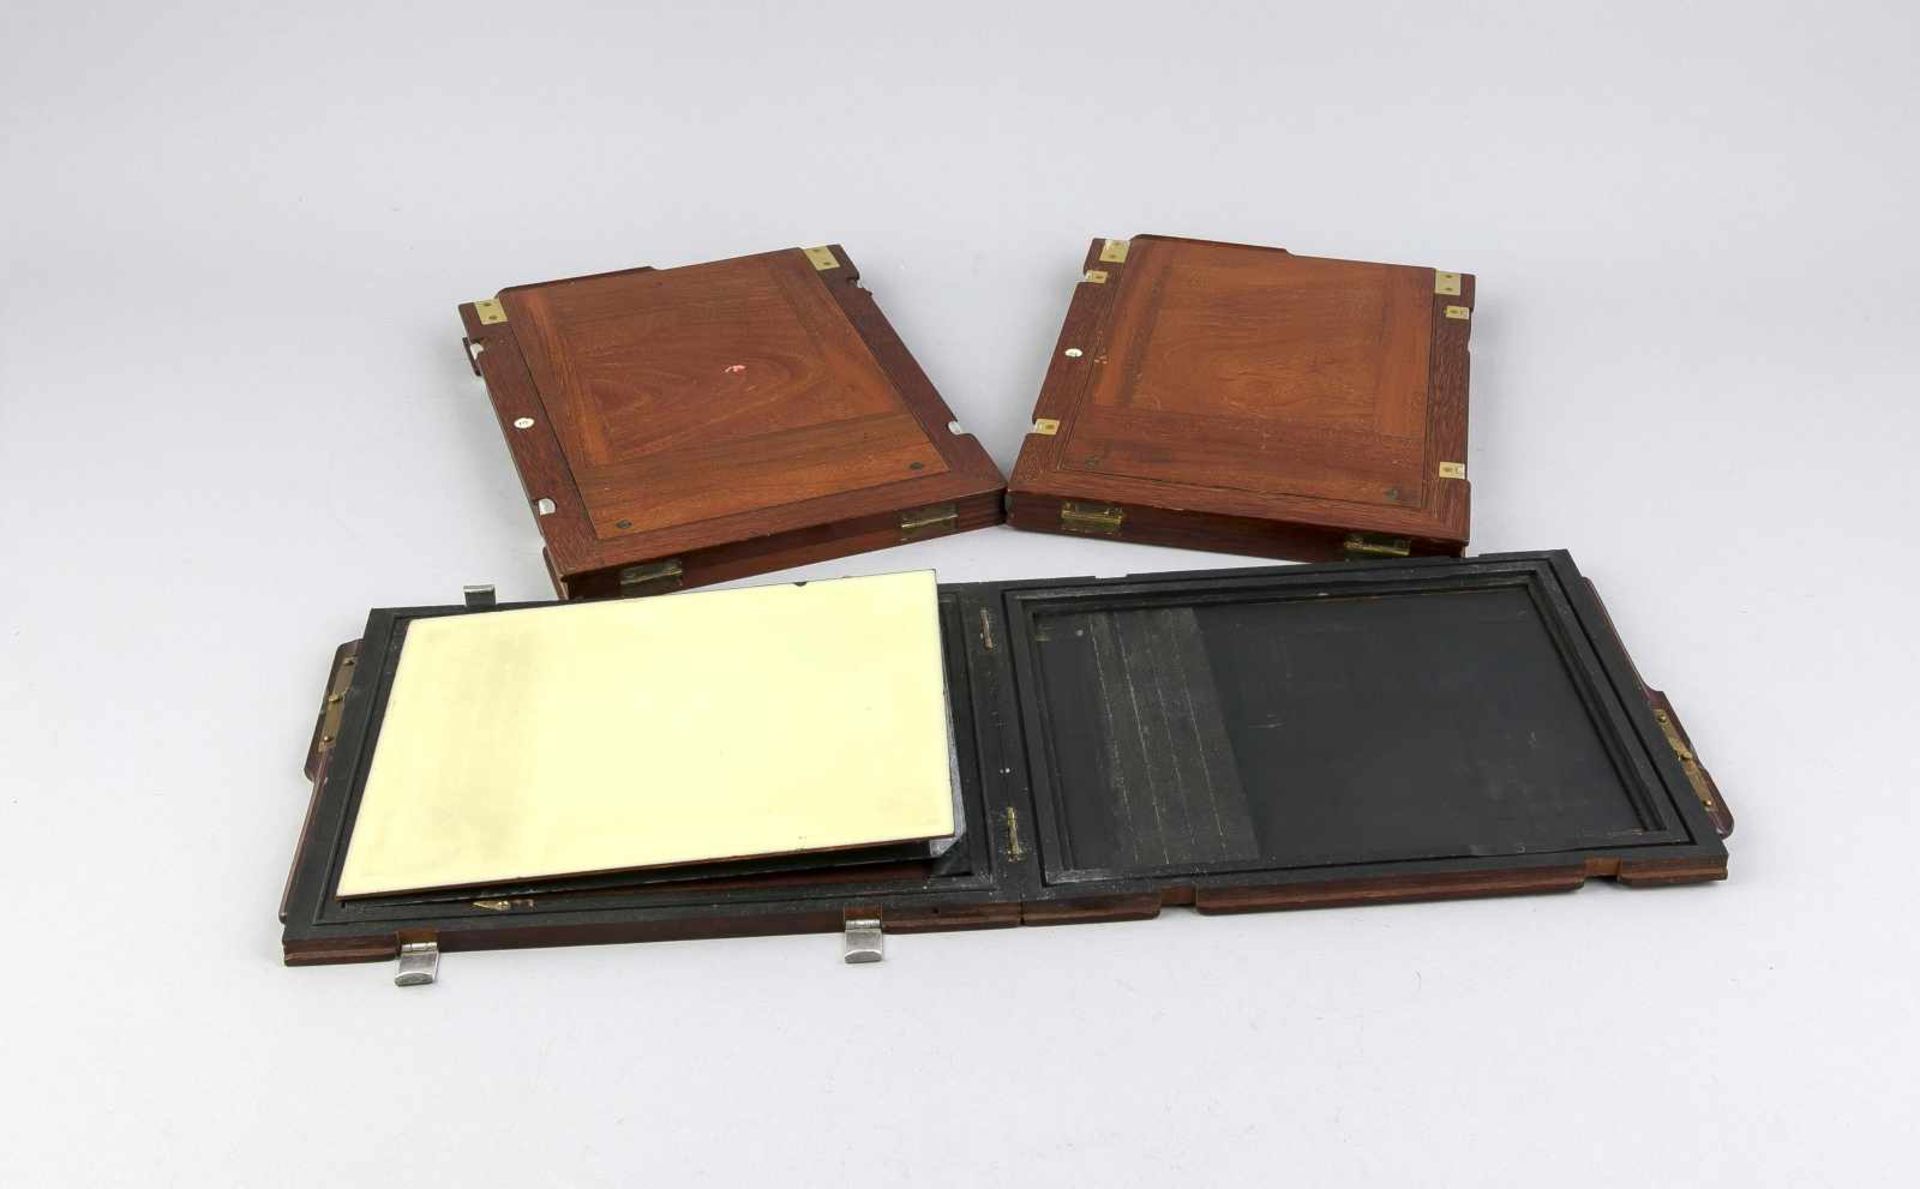 3 Fotoplatten für Plattenkameras, 1. H. 20. Jh., Holzgehäuse, Glas- u. Metallplatten, 1 Glasplatte